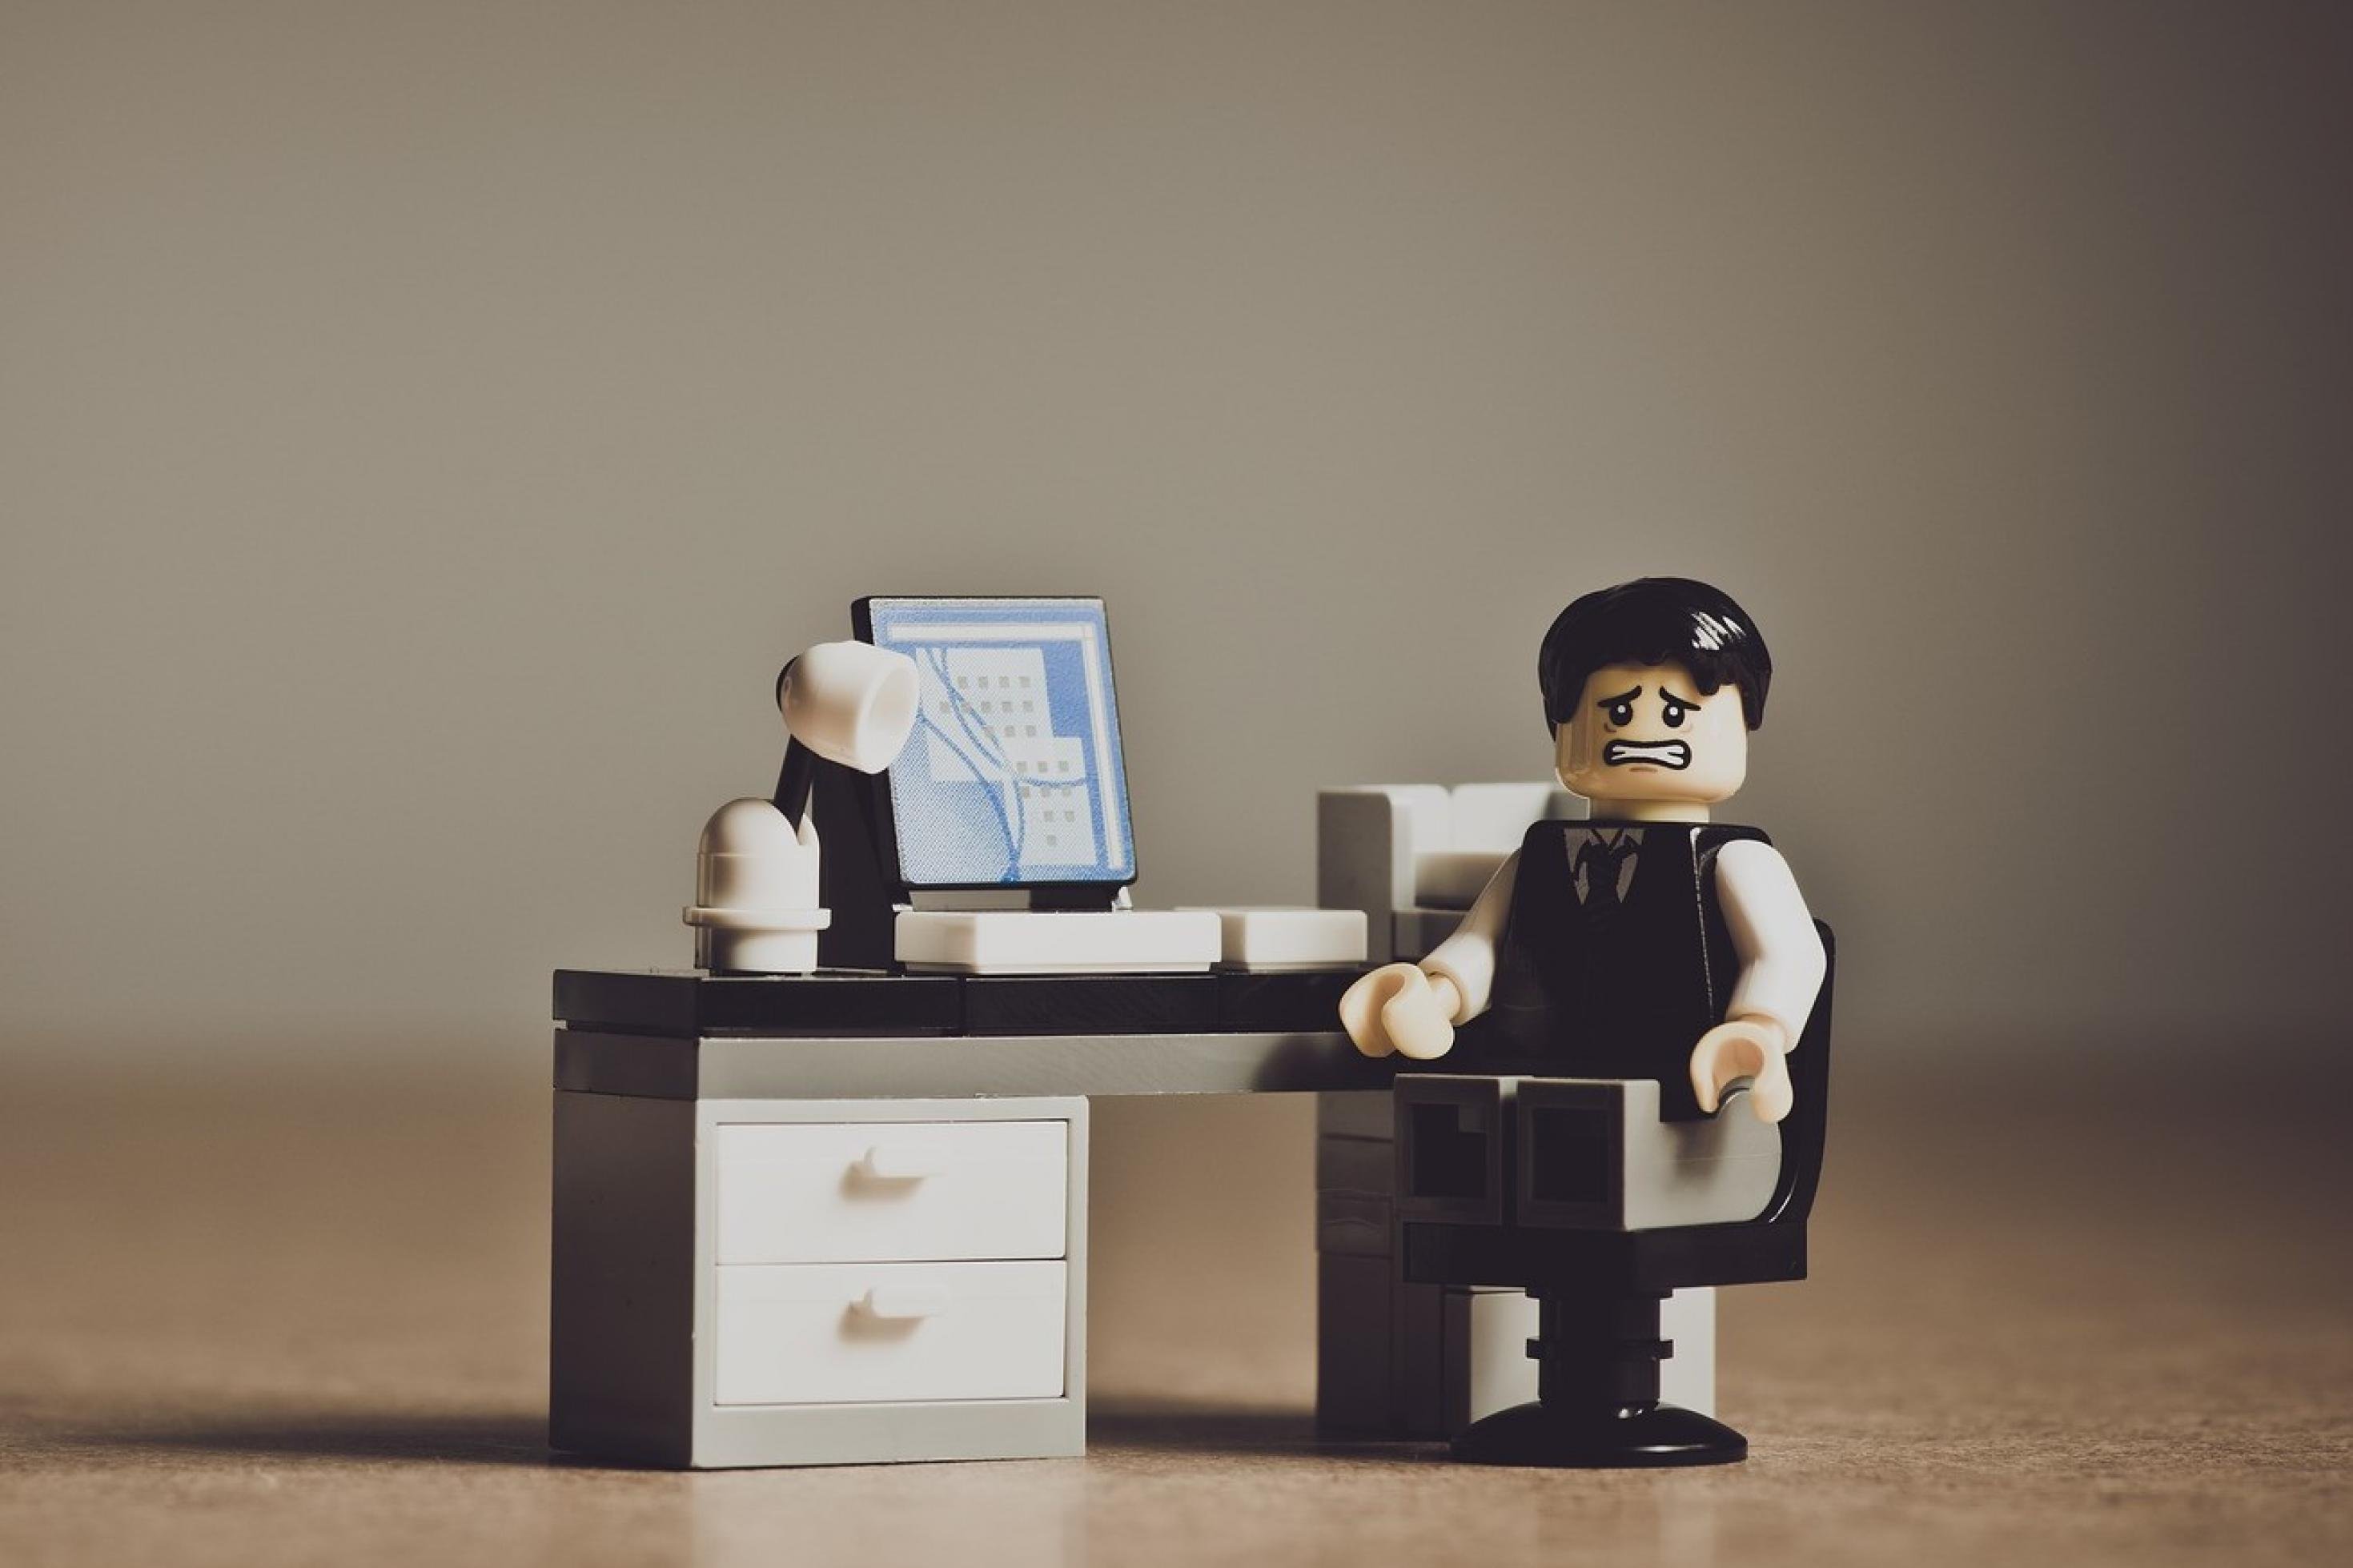 Ein Lego-Männchen sitzt mit besorgtem, verängstigtem Gesichtsausdruck an einem Schreibtisch.